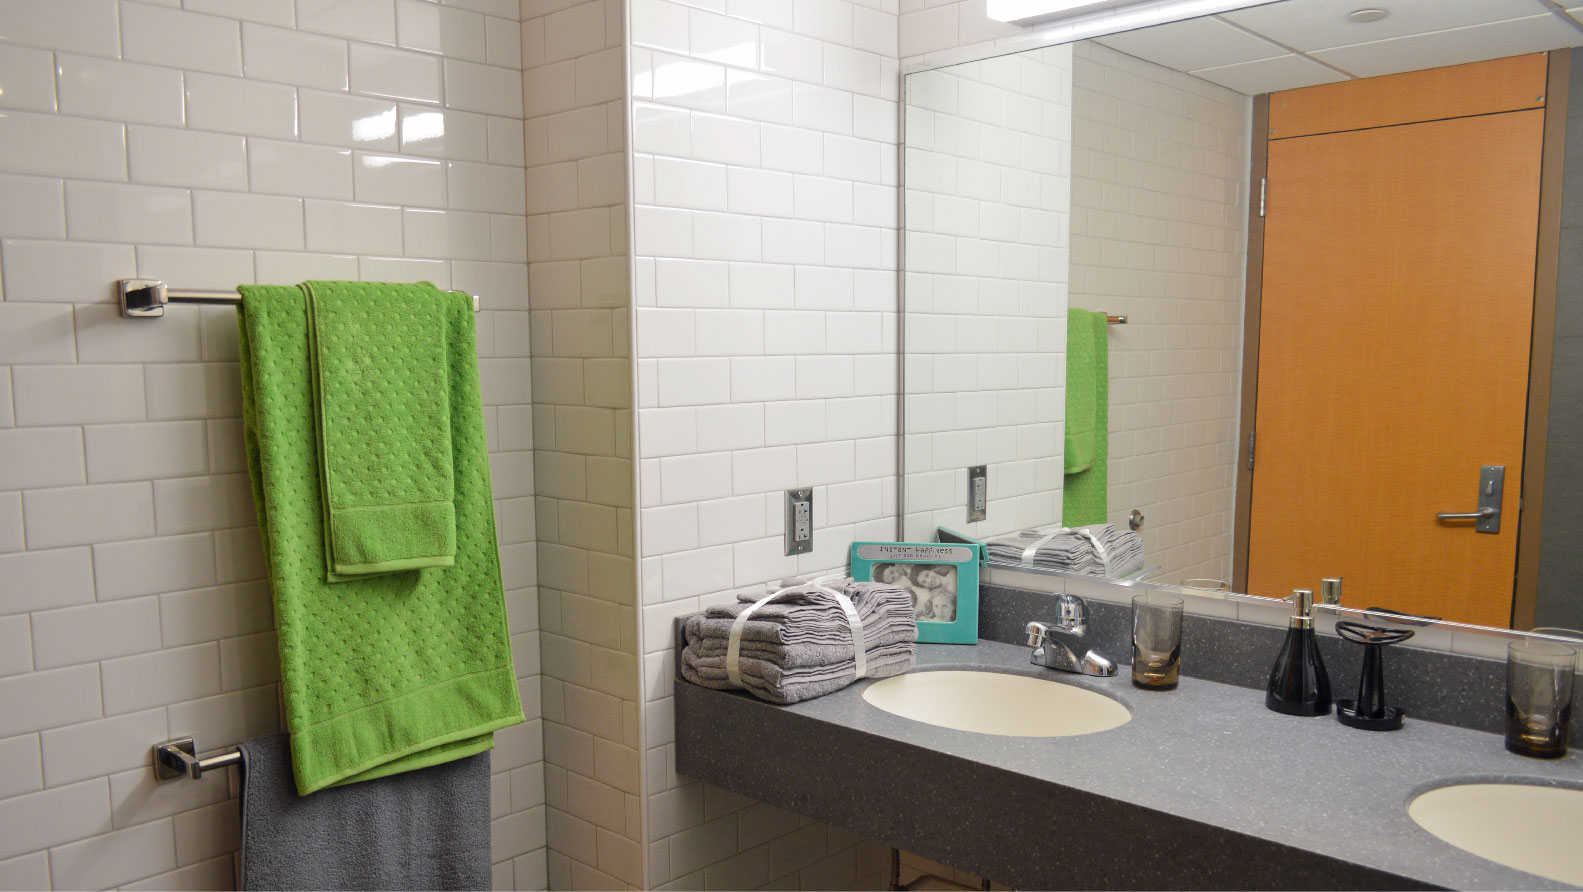 Blair-Shannon bathroomvainty with 2 sinks mirror and towel bars